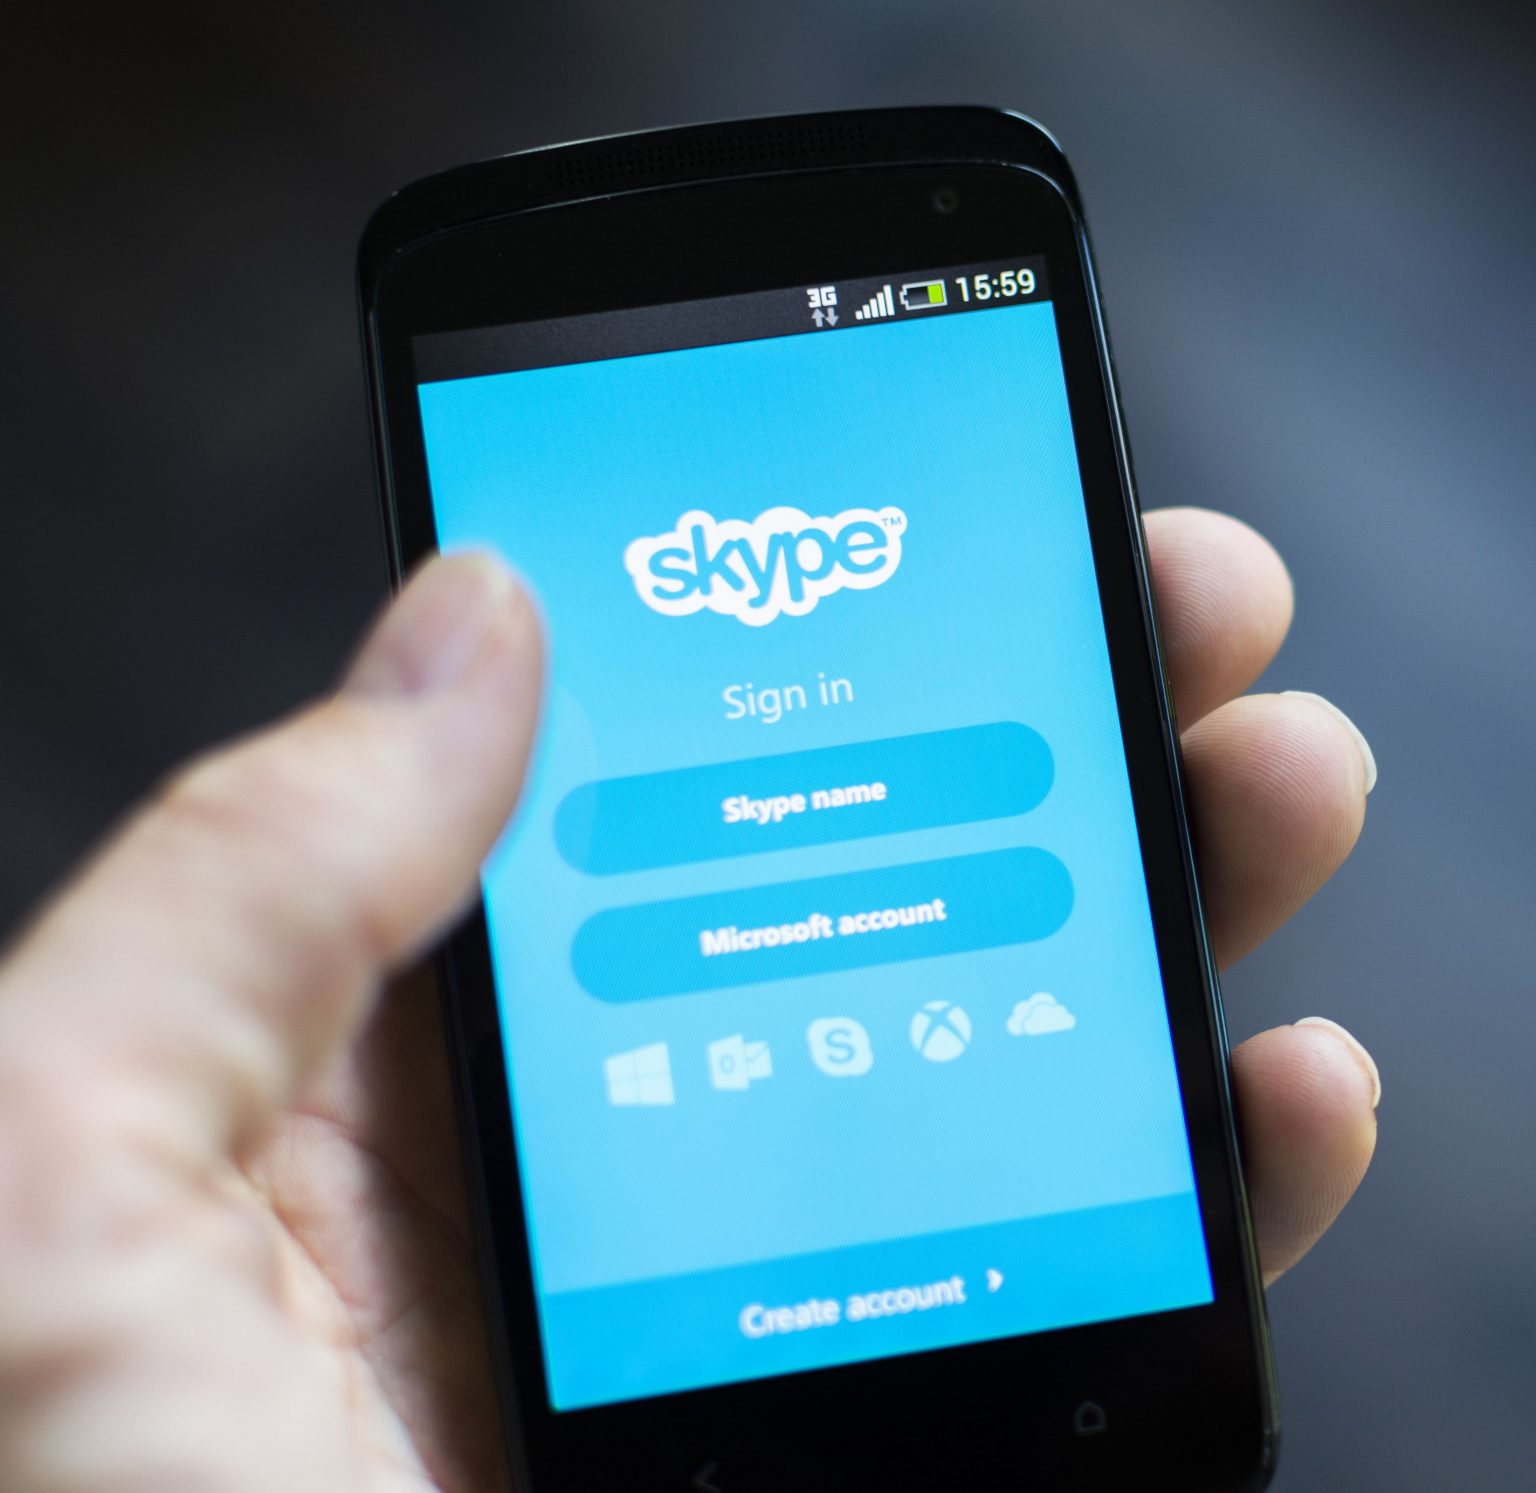 skype credit